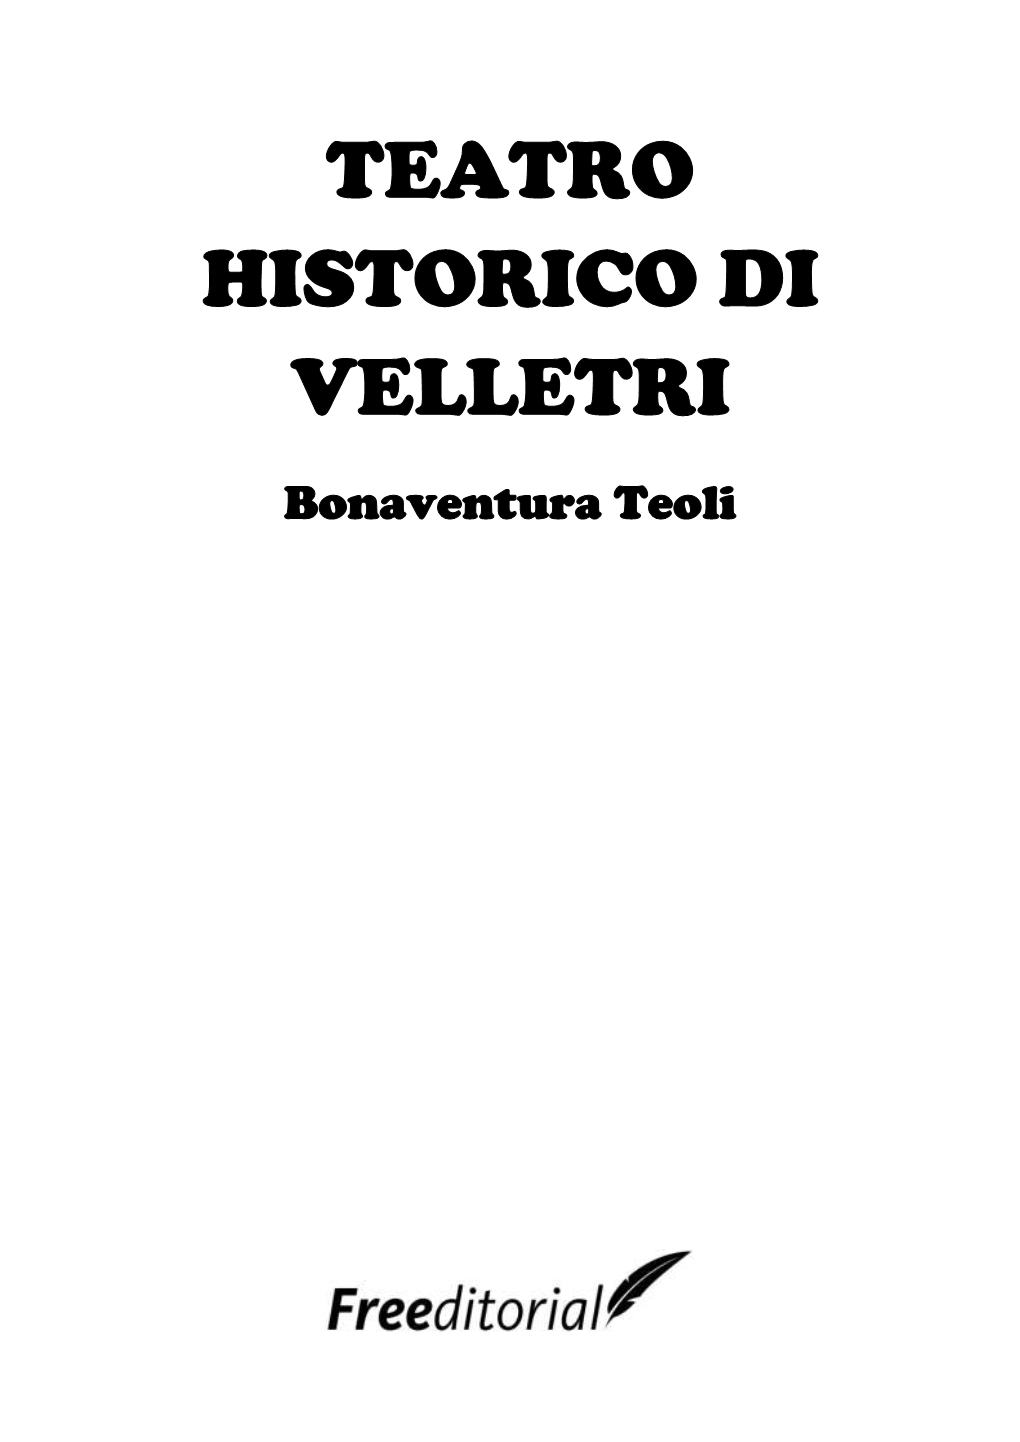 Teatro Historico Di Velletri